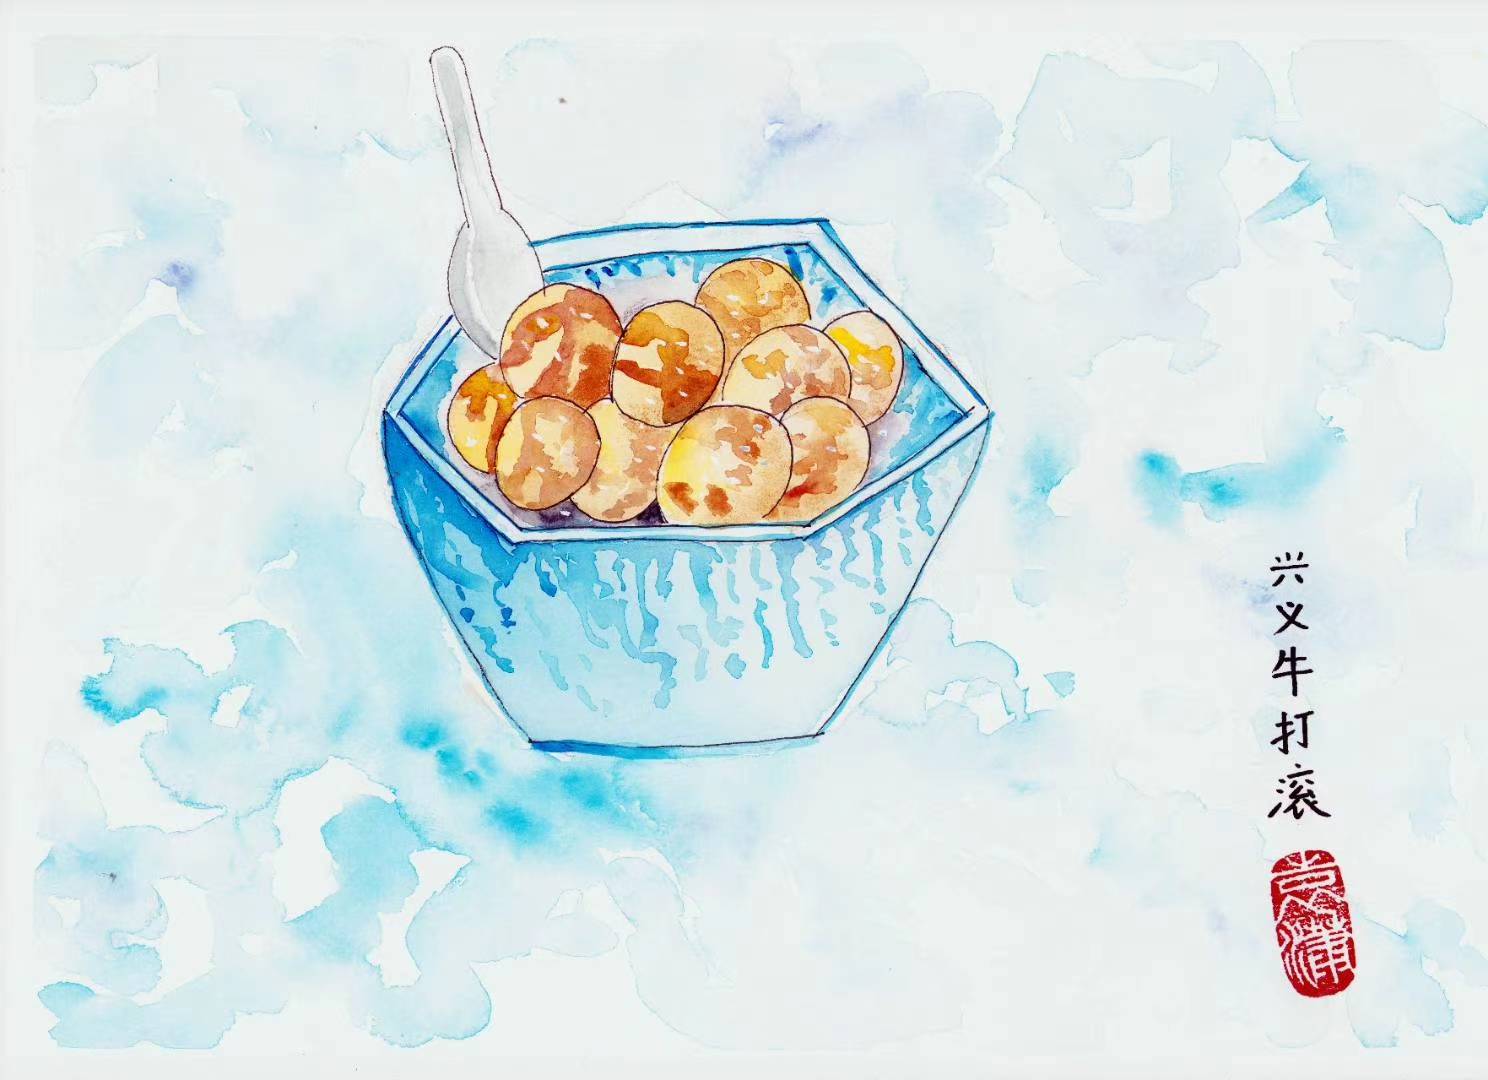 原创贵州兴义美食水彩画,冲冲糕,鸡肉汤圆,羊肉粉,你吃过几种?